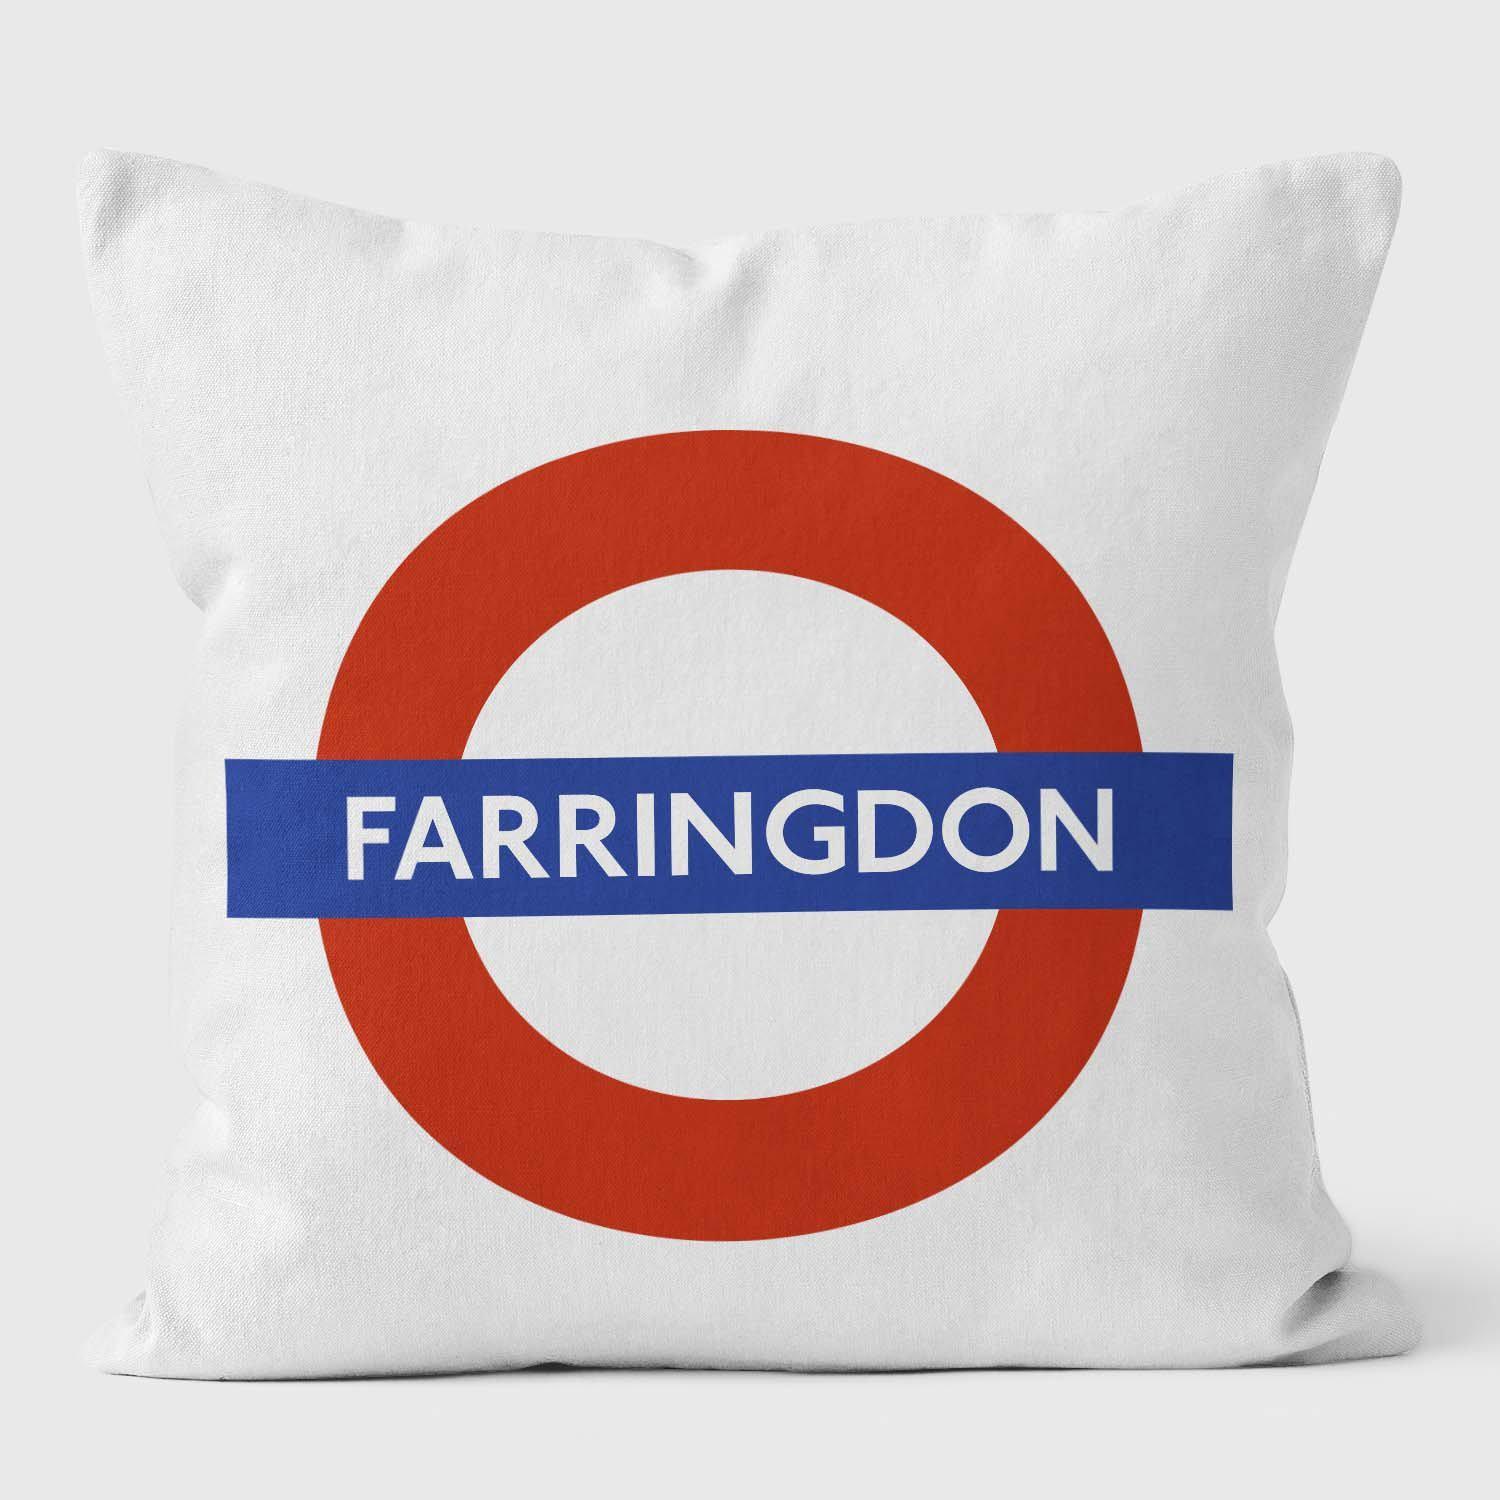 Farringdon London Underground Tube Station Roundel Cushion - Handmade Cushions UK - WeLoveCushions